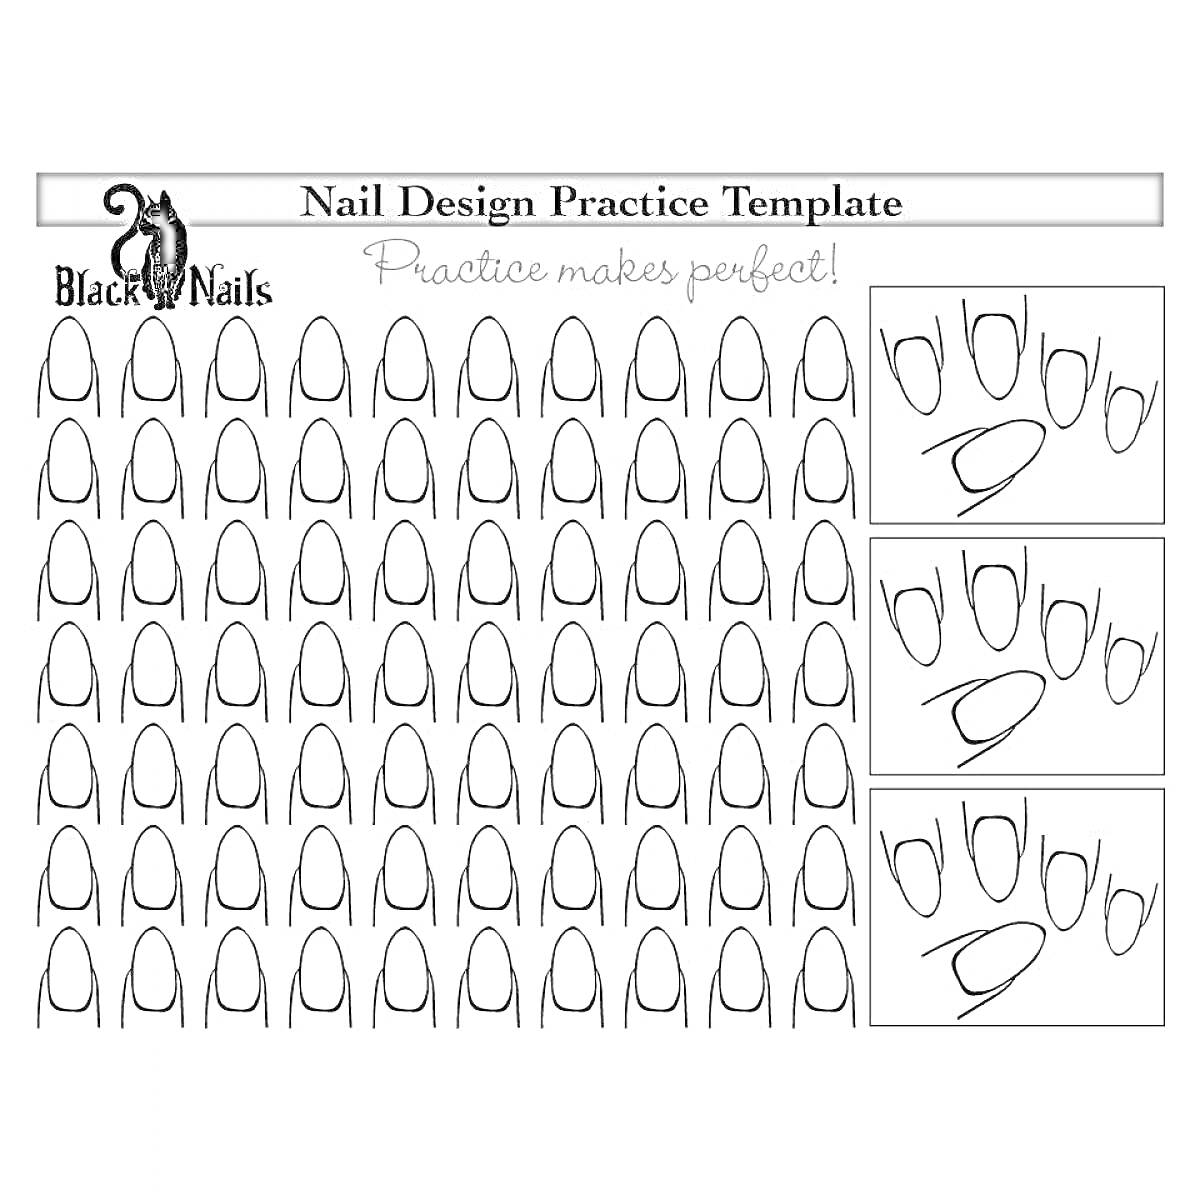 Раскраска Шаблон для практики дизайна длинных ногтей: много форм ногтей, примеры френча сбоку